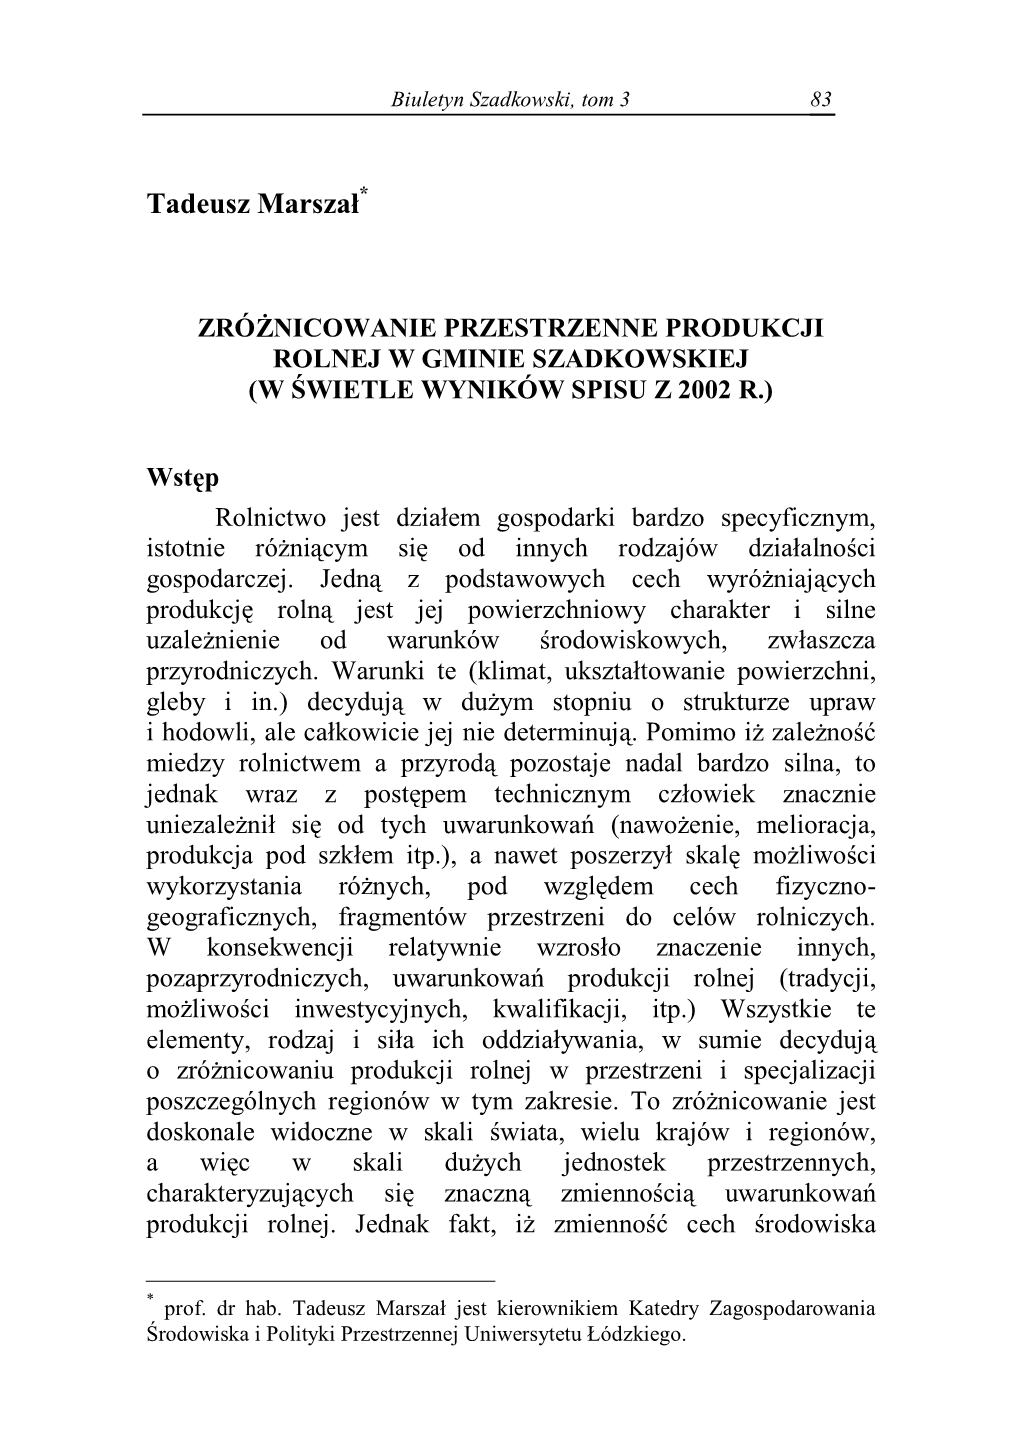 Zróżnicowanie Przestrzenne Produkcji Rolnej W Gminie Szadkowskiej (W Świetle Wyników Spisu Z 2002